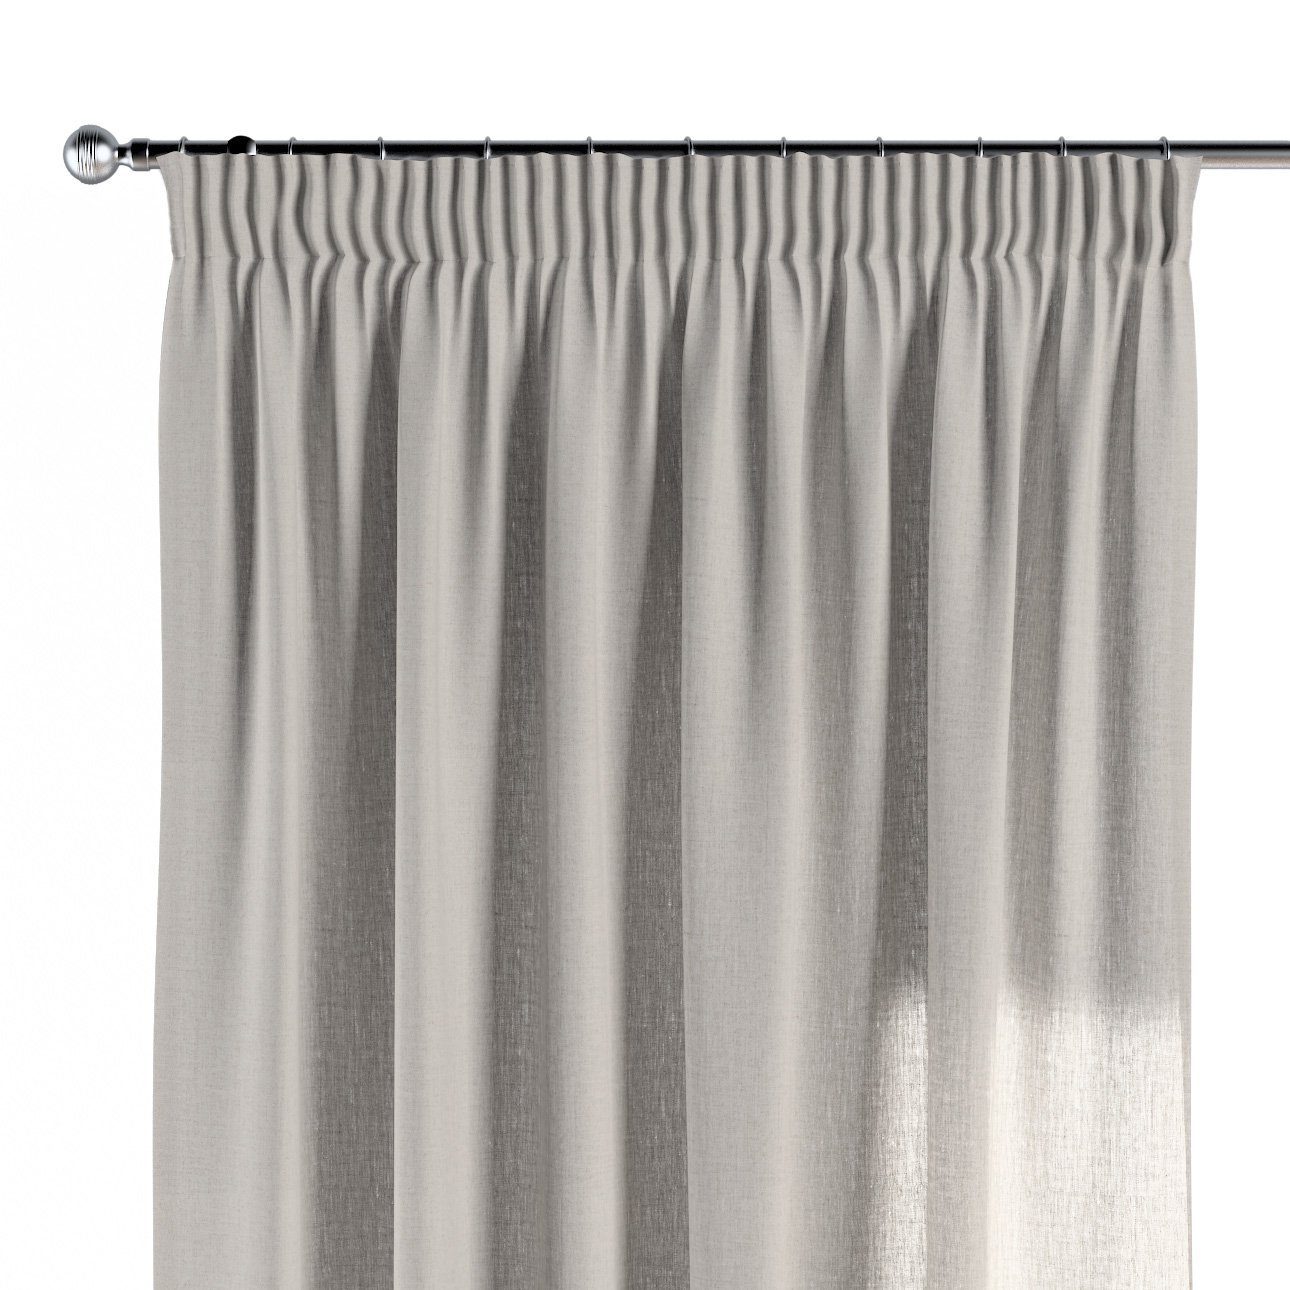 Vorhang Vorhang 130x100 cm, mit Dekoria grau-beige Kräuselband Leinen